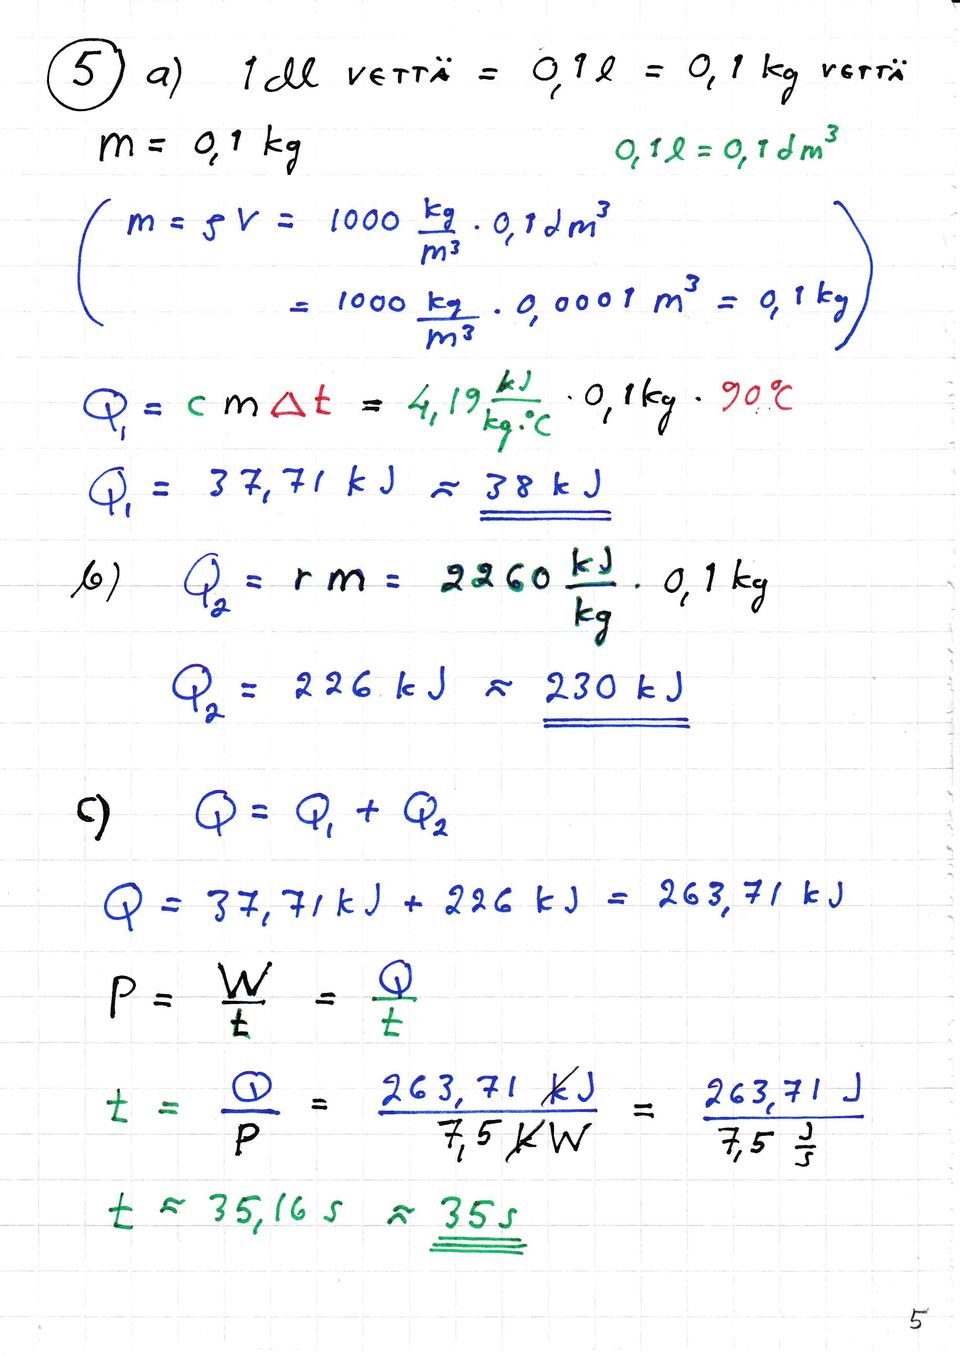 = arr') OV - 7 o,:c,(t) Ar= r tn = åå 6o!J ot 1 k? b7 0 A =?2G I.